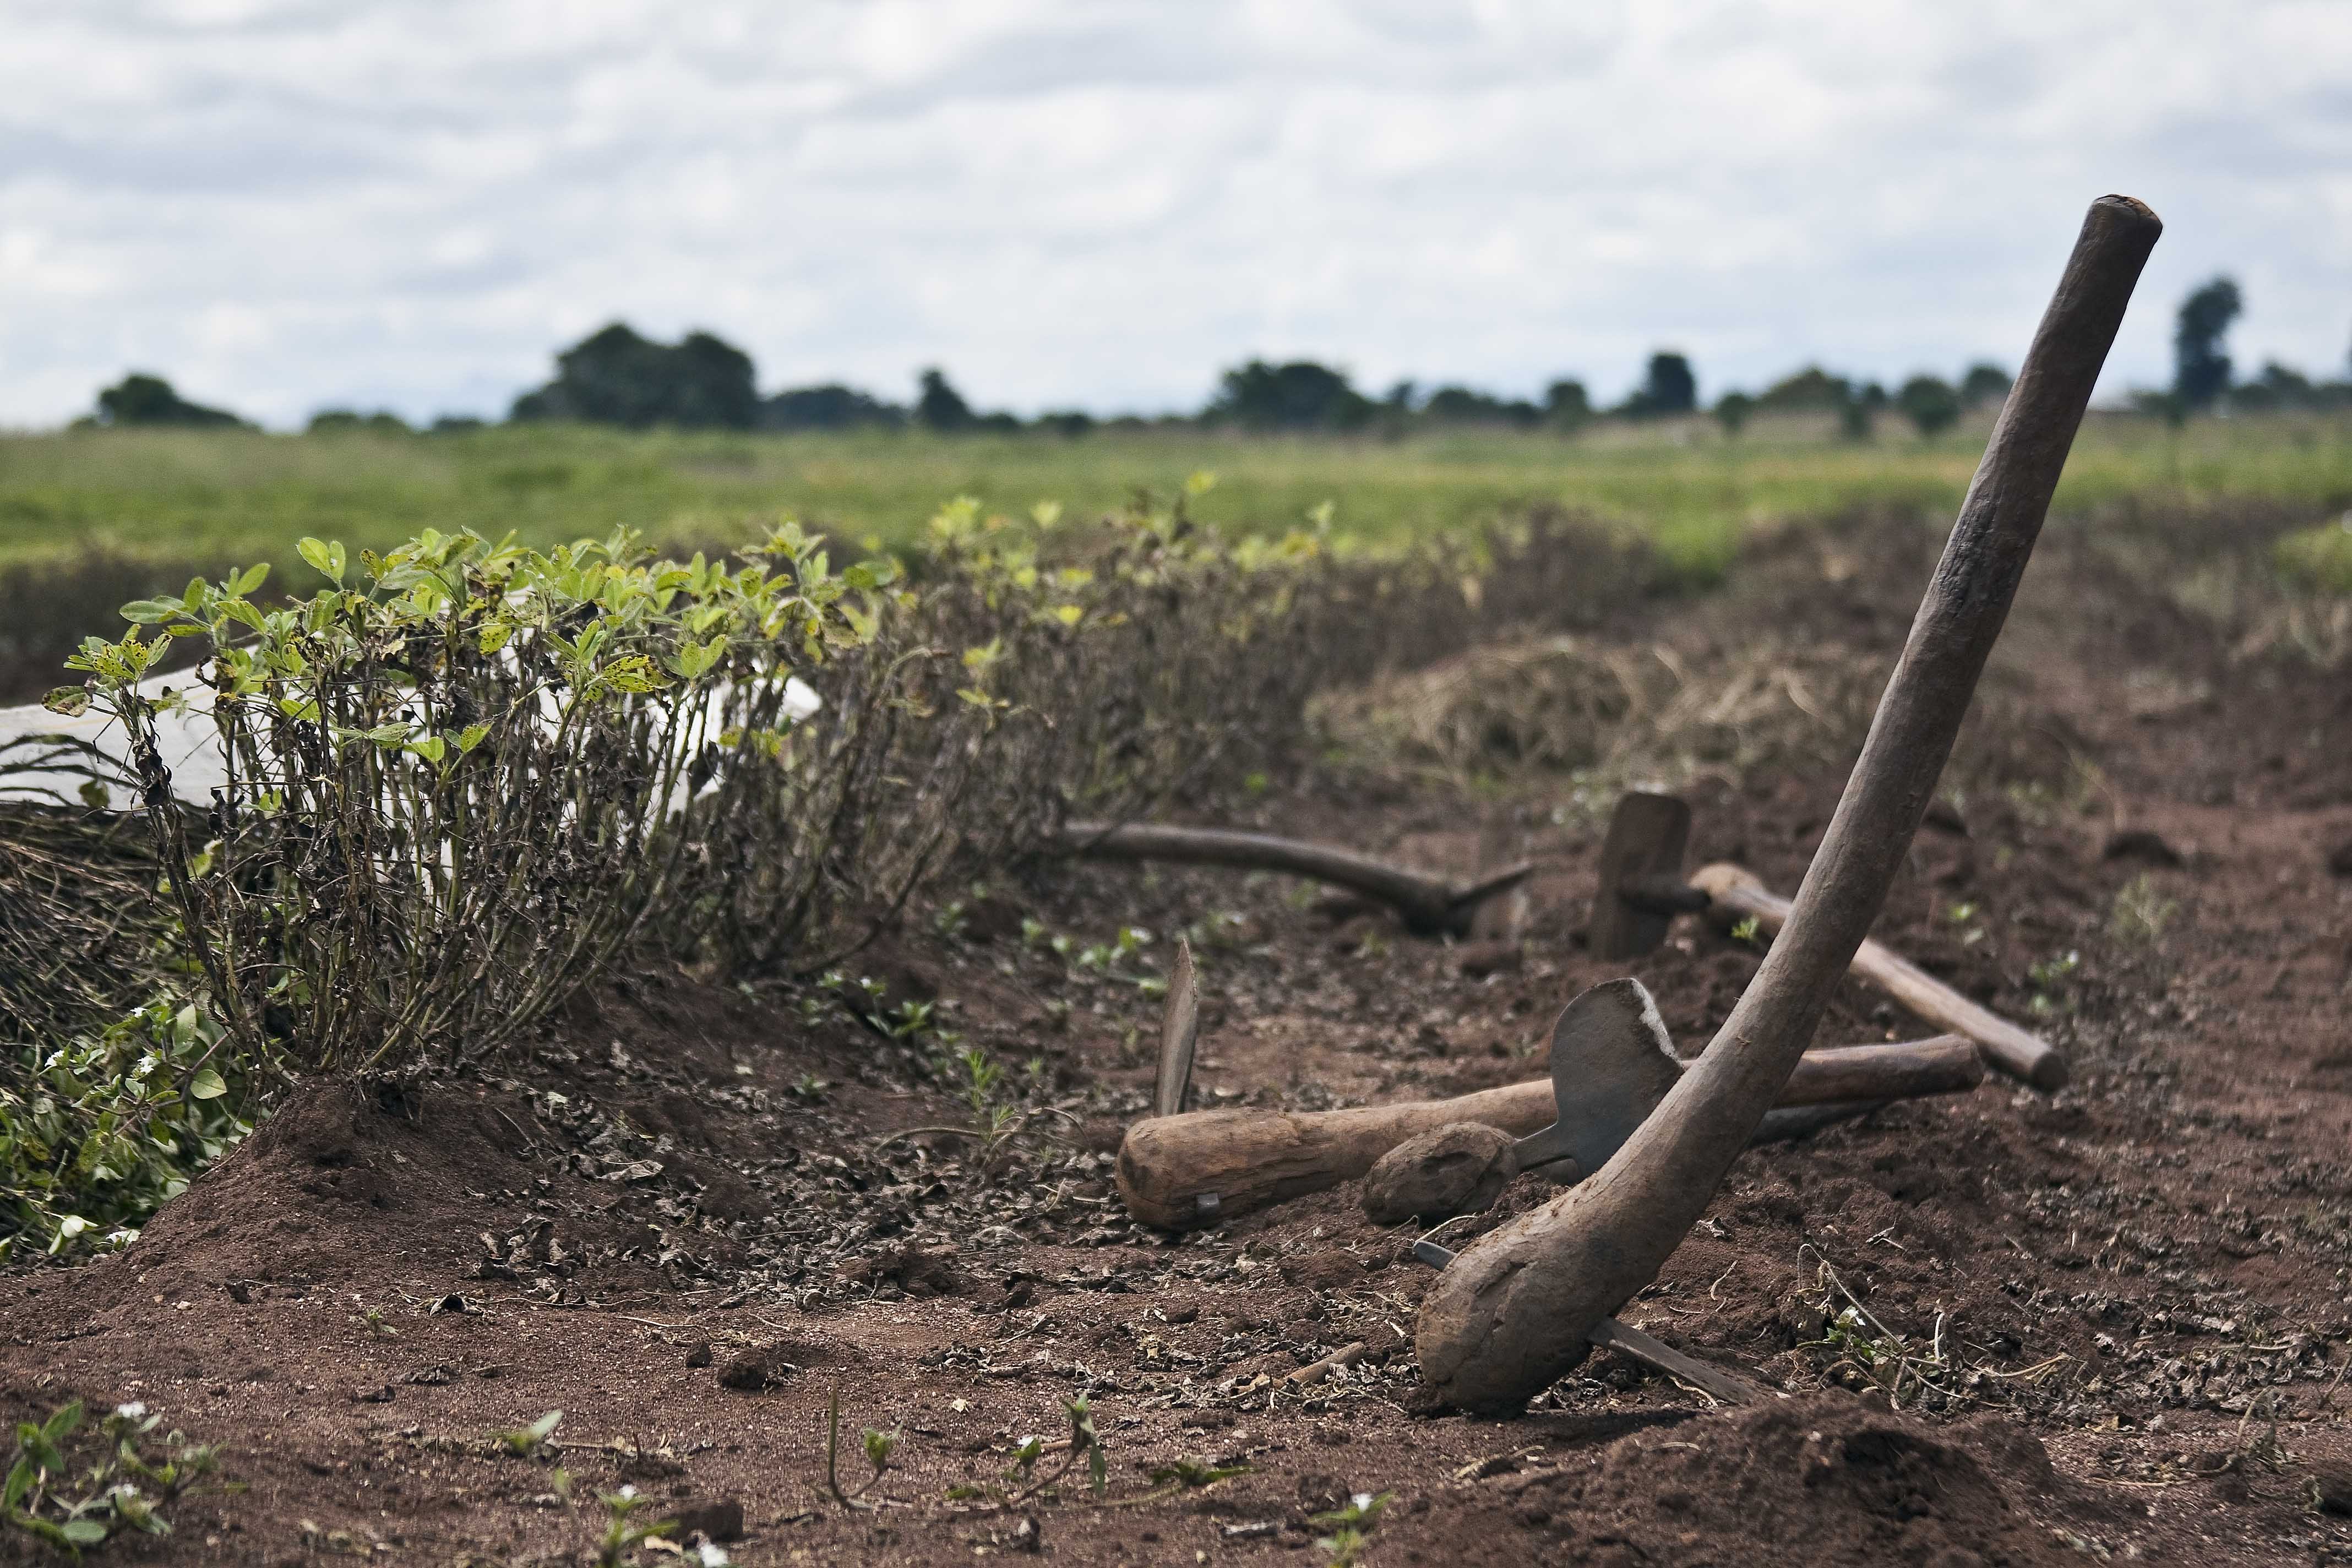 Photo of farm tools in Malawi. Image Credit: Swathi Sridharan, CC BY-SA 2.0